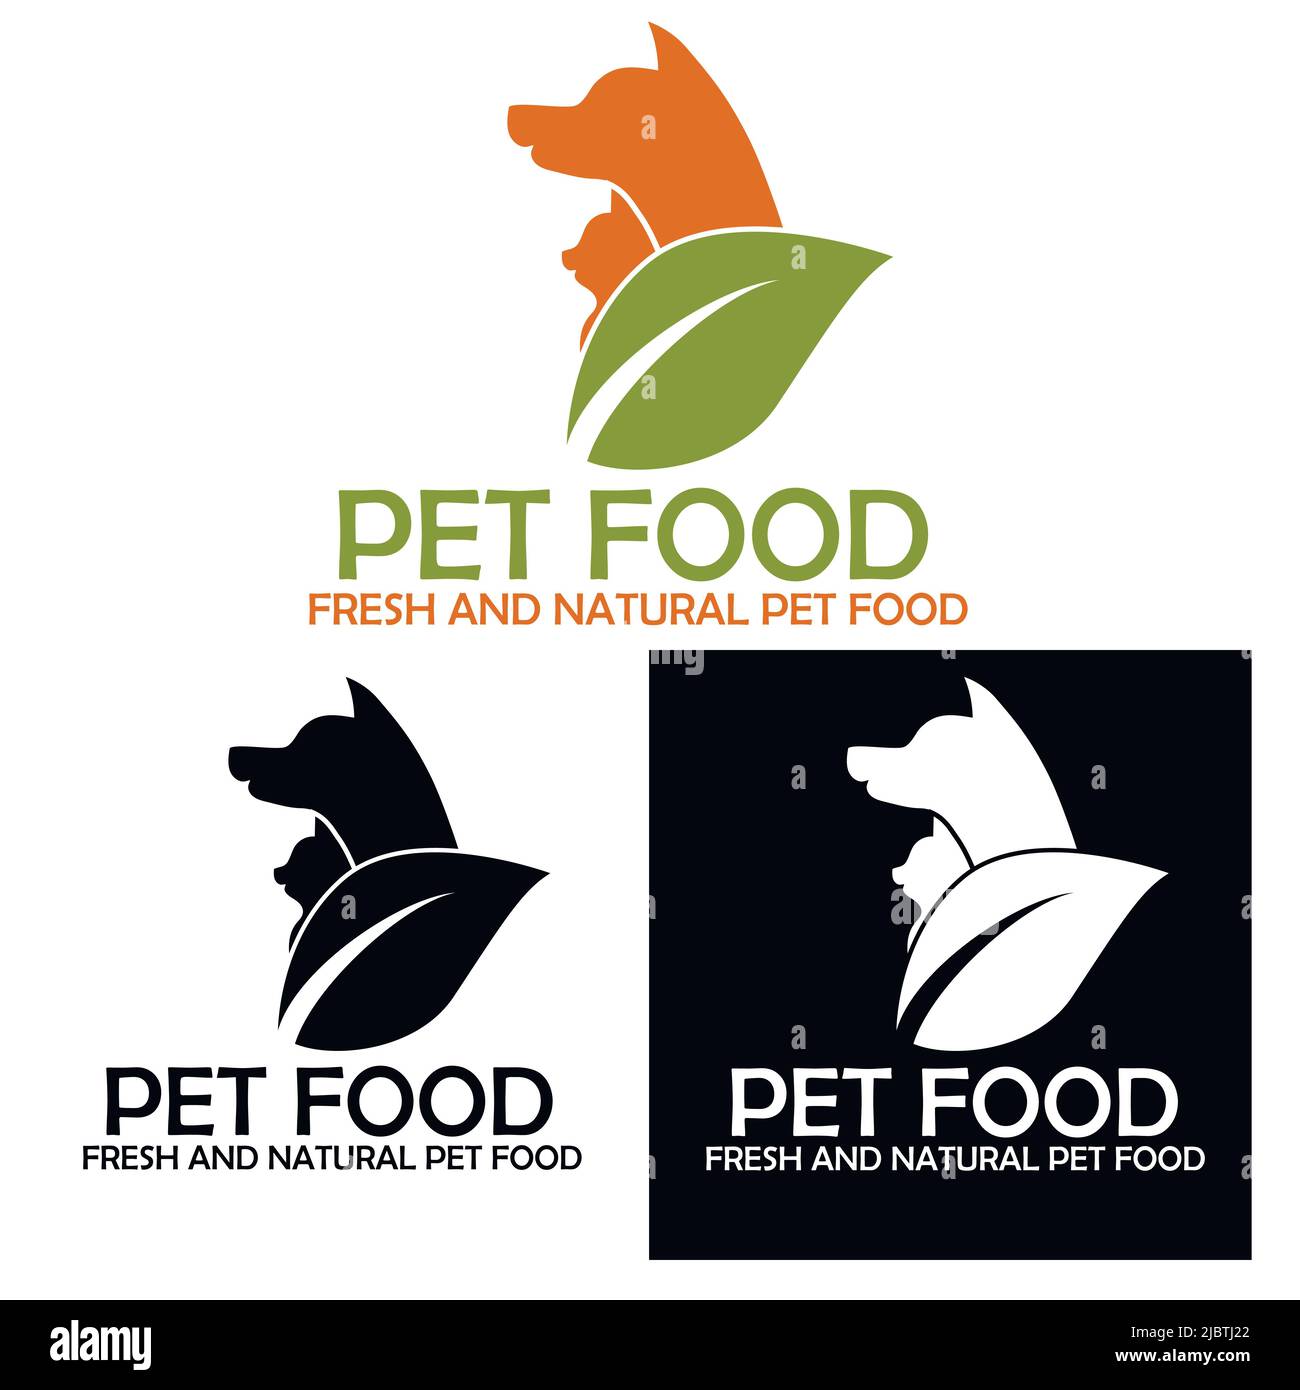 Top more than 122 pet food logo super hot